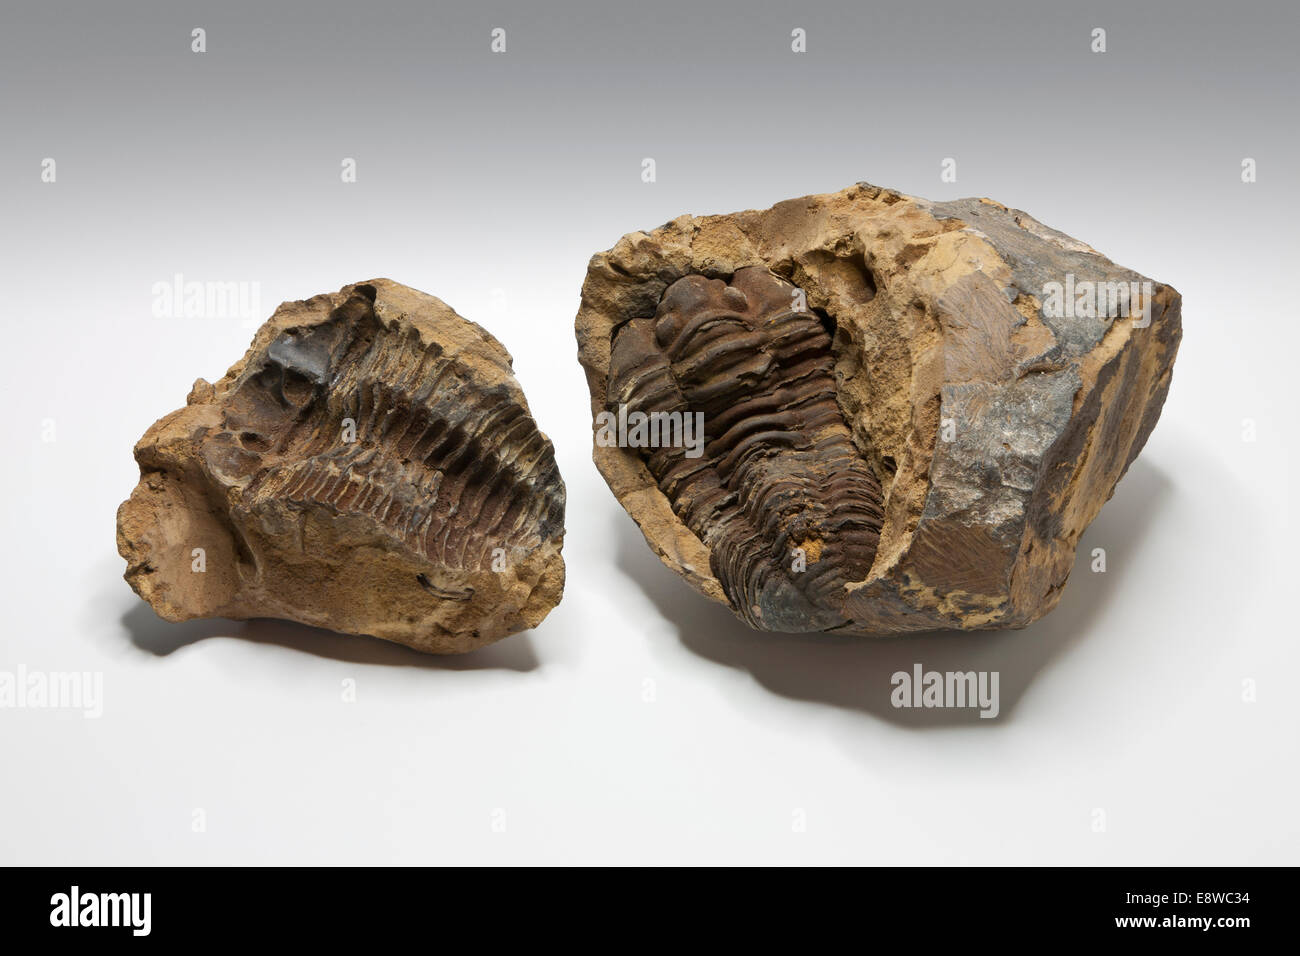 Seul Fossile de trilobite du Maroc sur un fond gris clair Banque D'Images